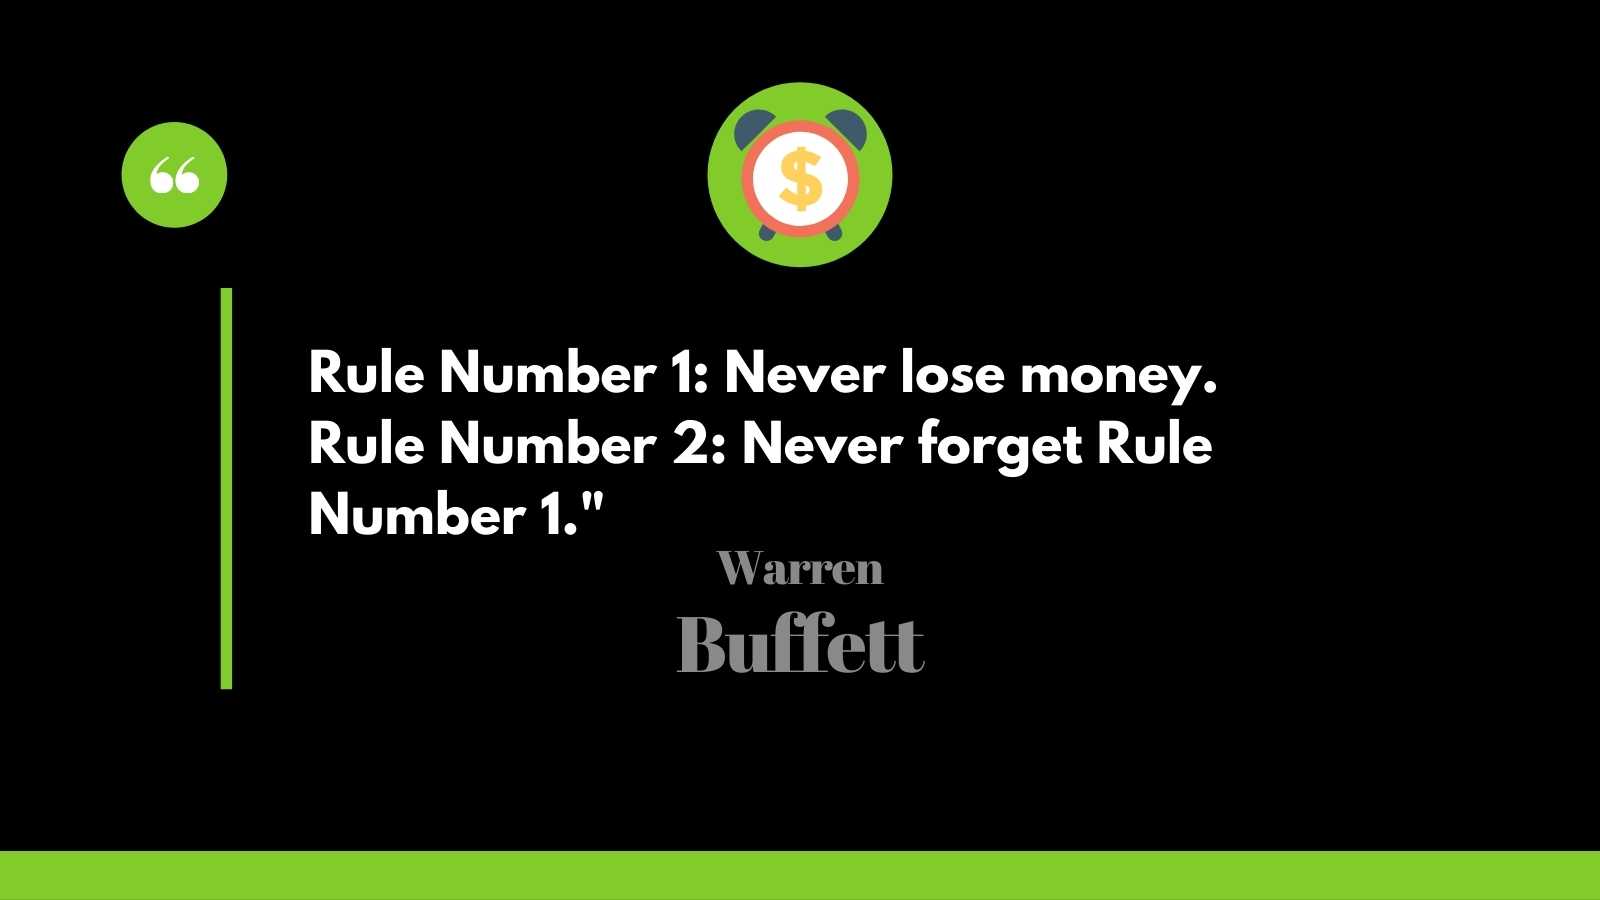 Warren Buffett famous rules